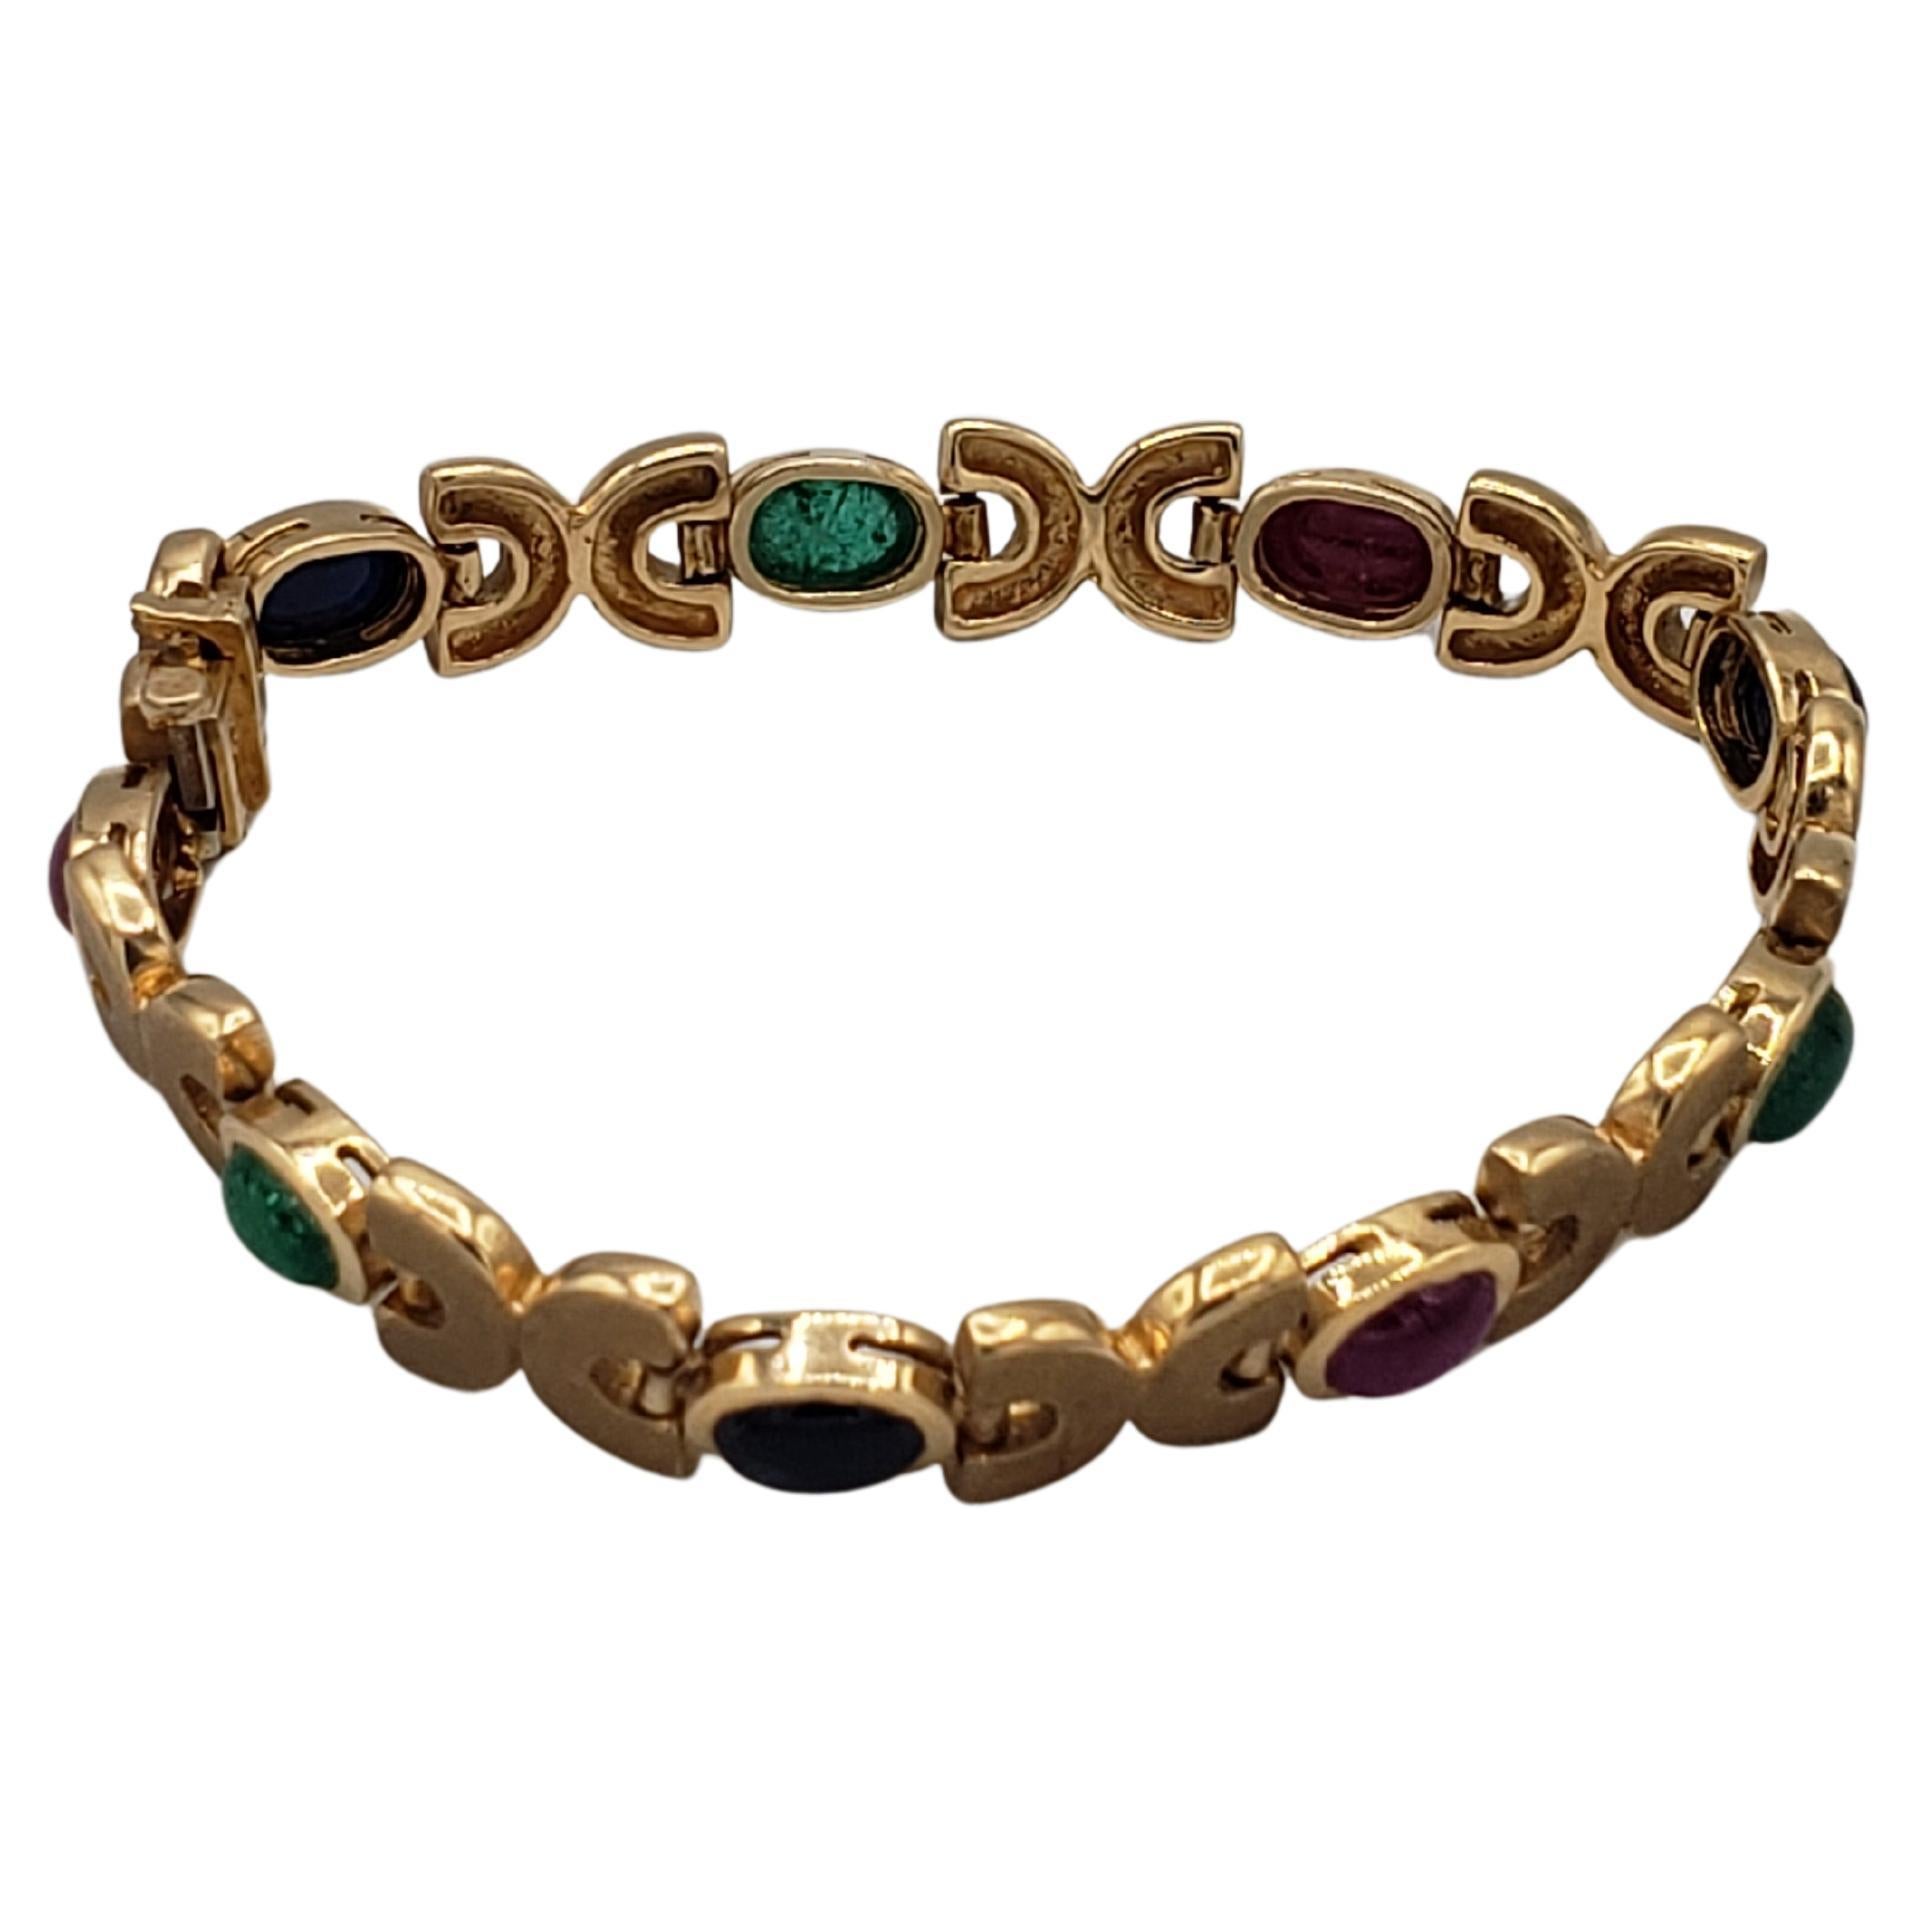 Dieses wunderschöne Armband ist ein atemberaubendes Beispiel für Schönheit, die in kostbaren Edelsteinen eingefangen wurde. Dieses aus massivem 14-karätigem Gelbgold gefertigte Schmuckstück ist mit natürlichen Rubin-, Saphir- und Smaragdsteinen in